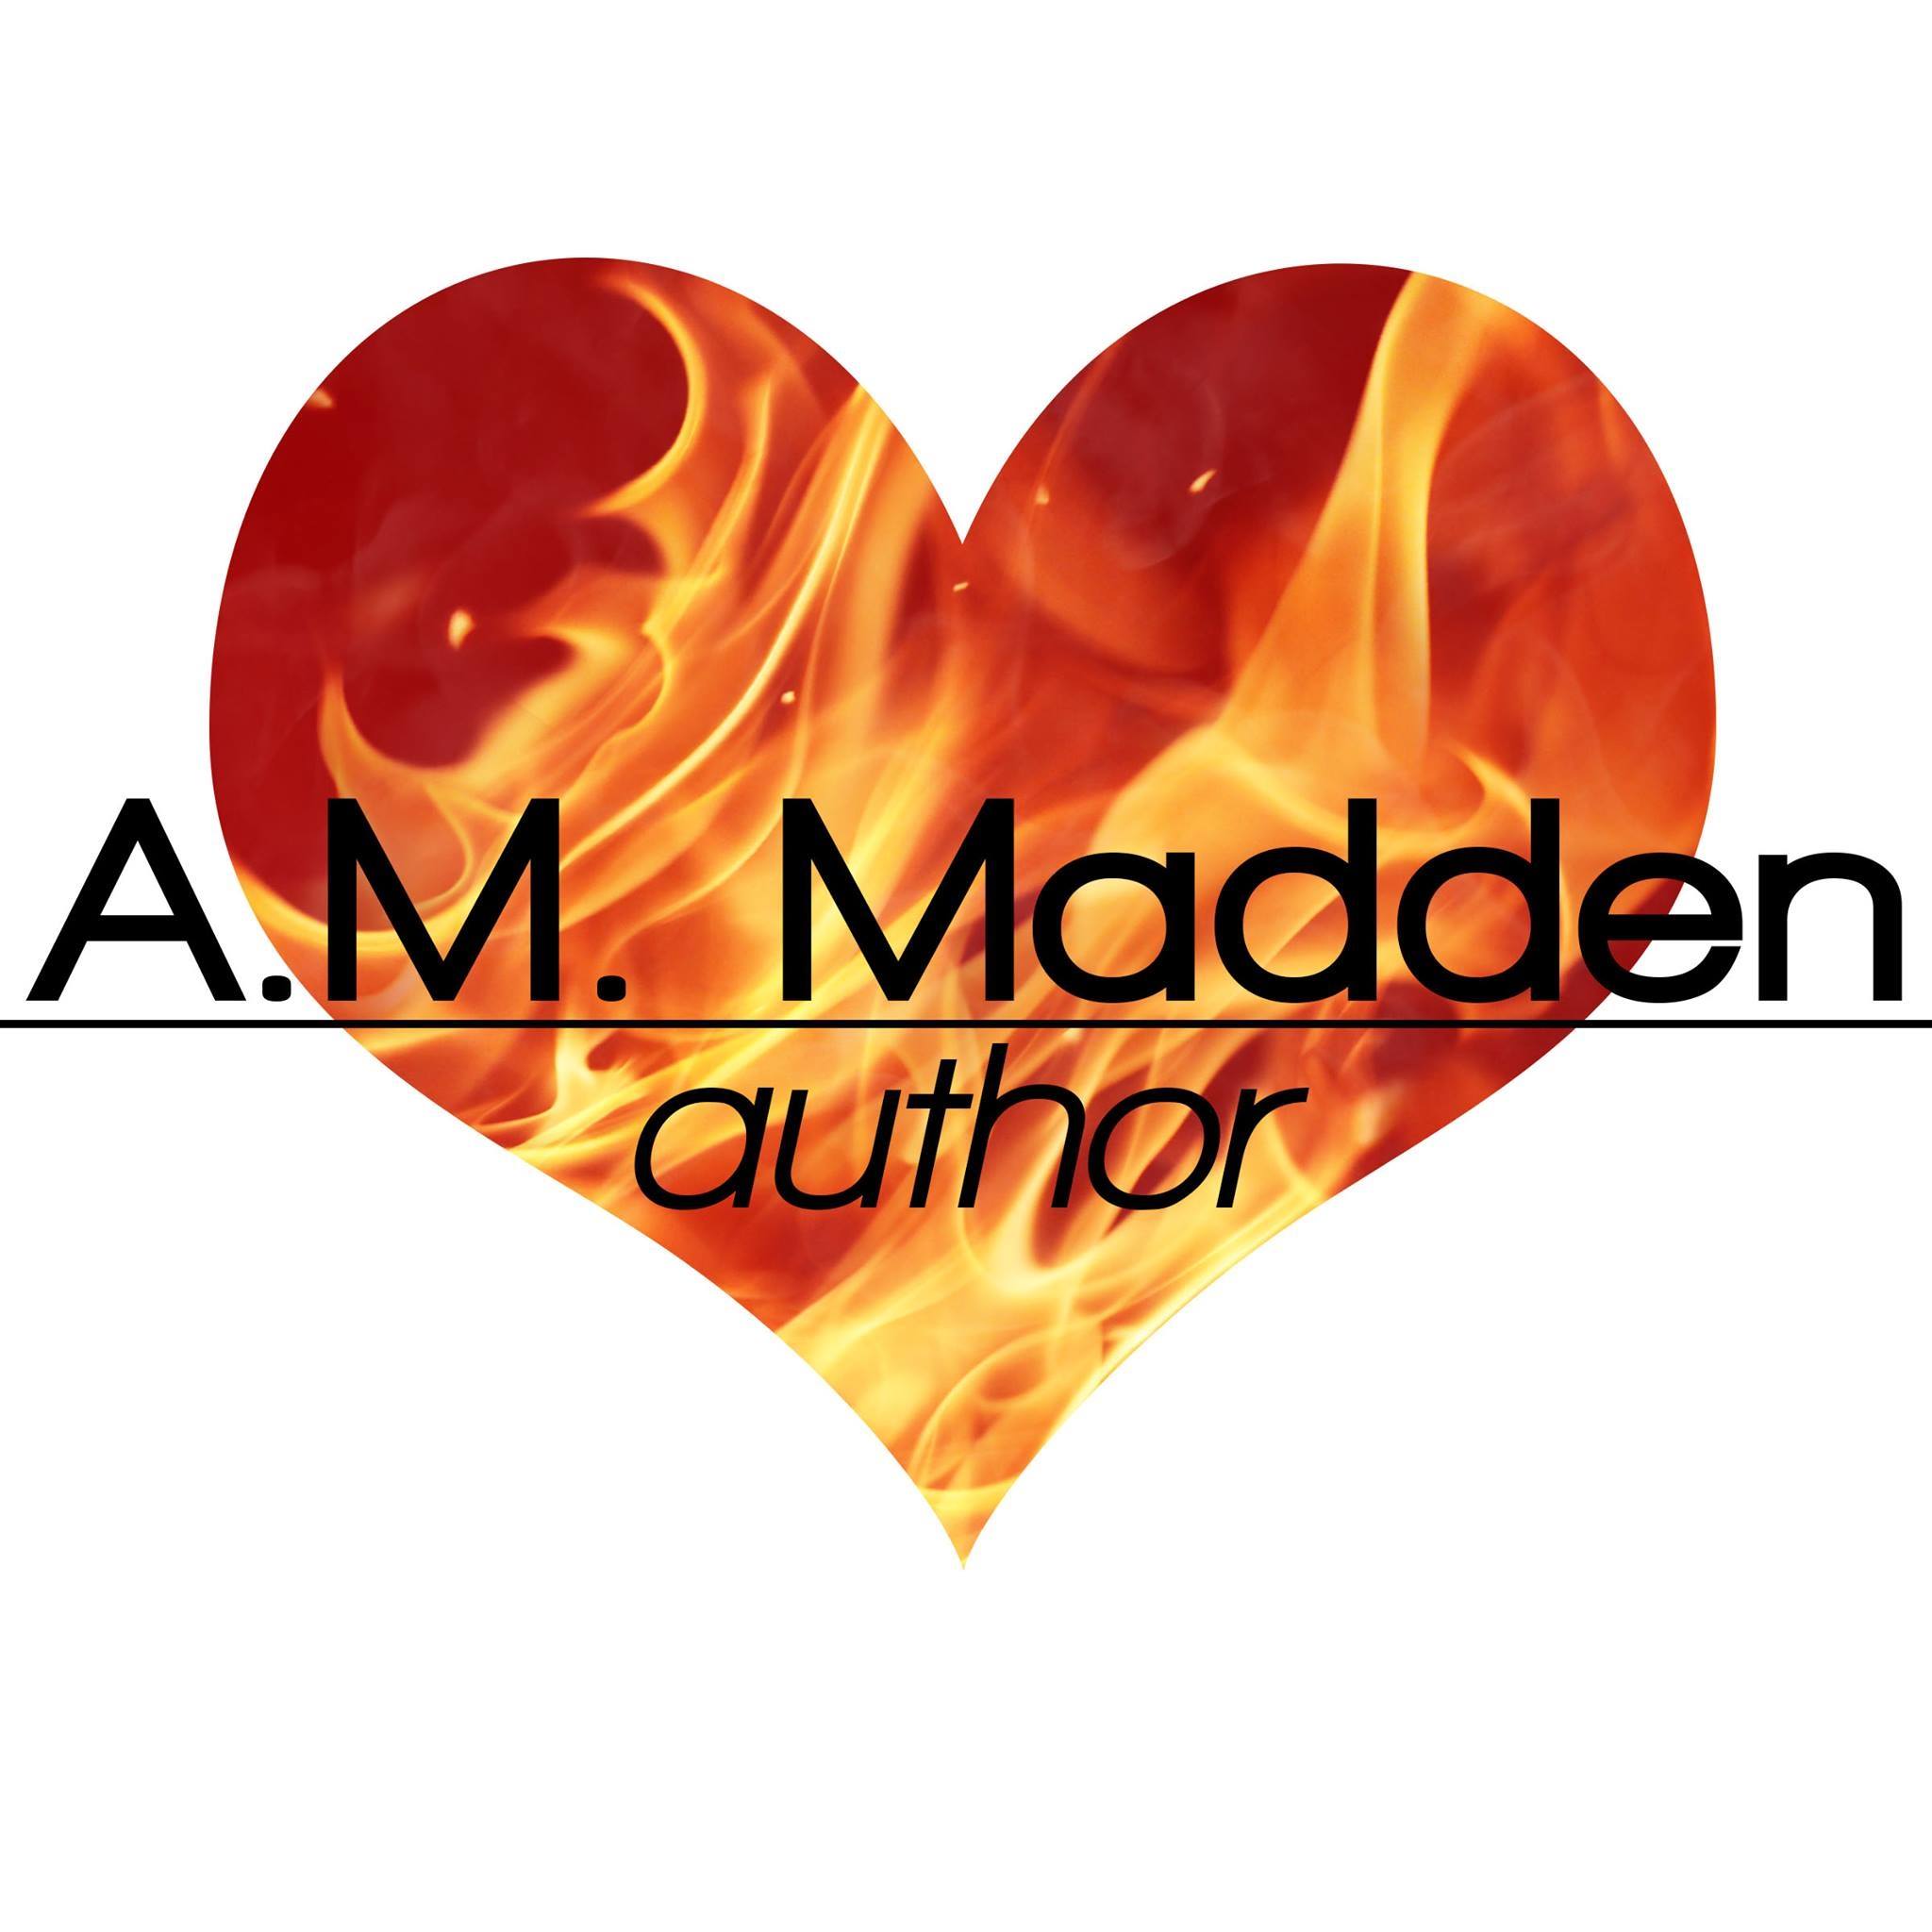 A.M.Madden